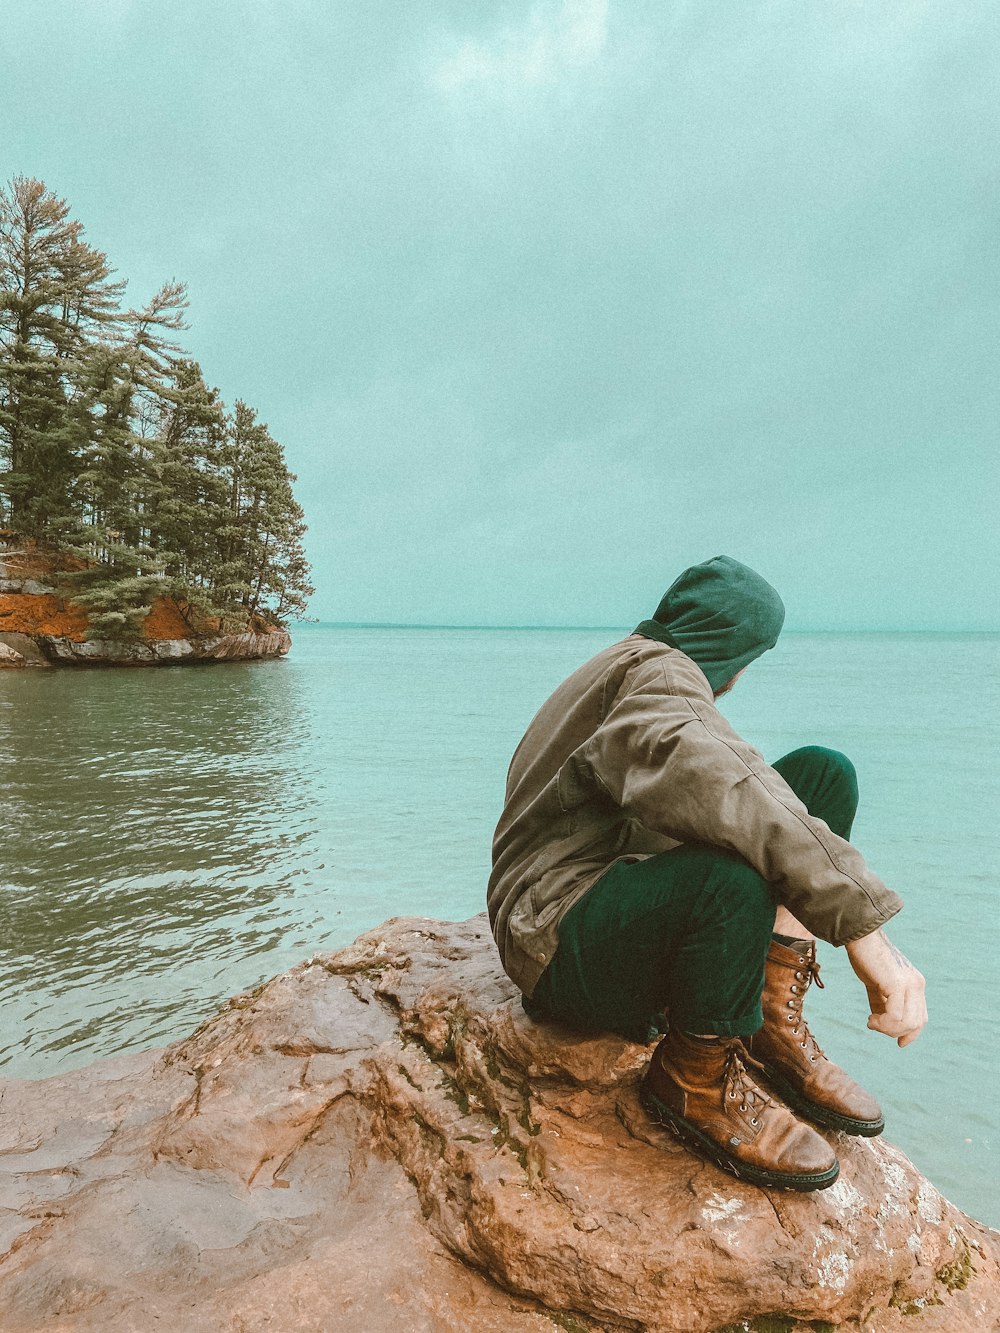 녹색 까마귀와 갈색 바지를 입은 남자가 수역 근처의 갈색 바위에 앉아 있습니다.